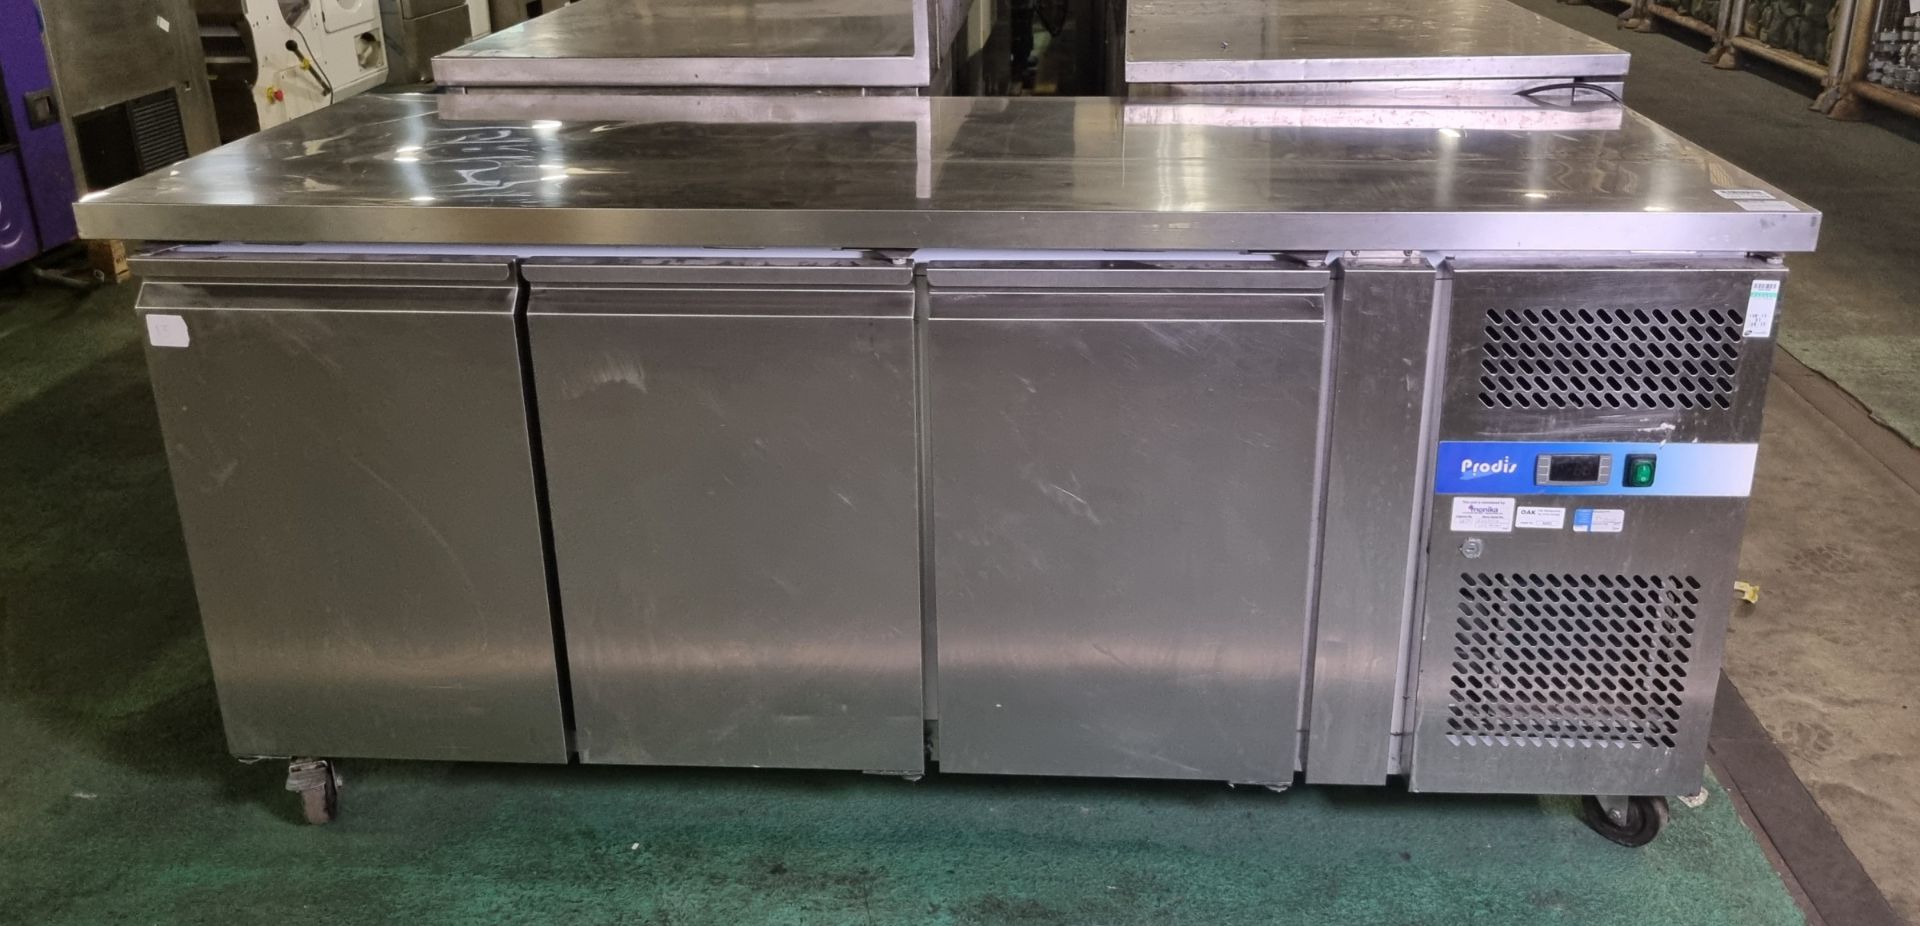 Prodis GN3100TN stainless steel 3 door counter fridge - W 1800 x D 700 x H 830mm